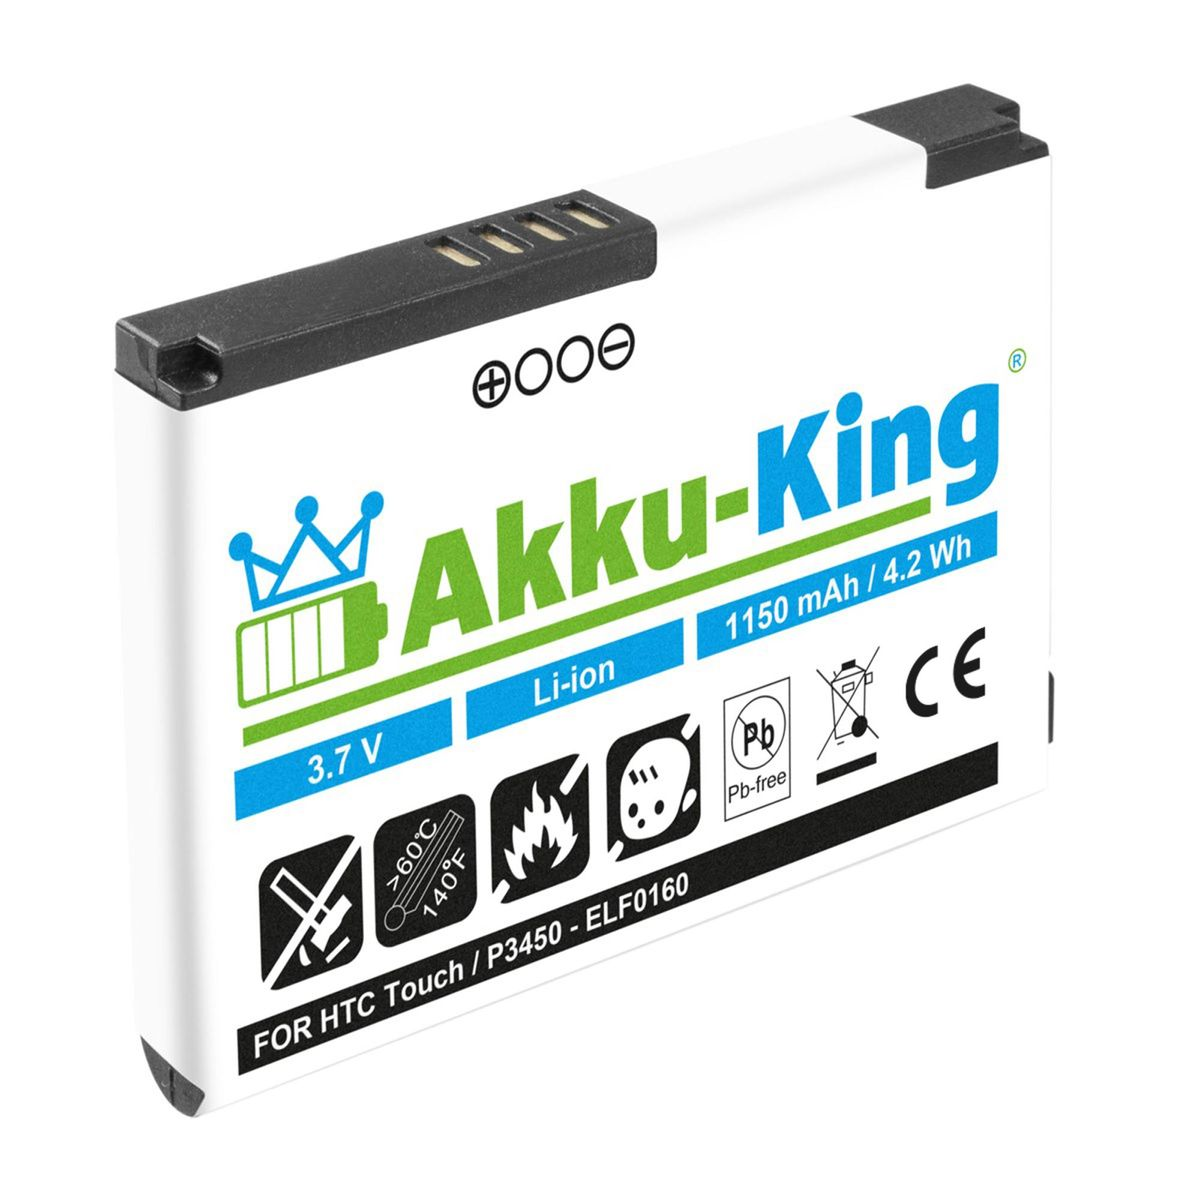 AKKU-KING Akku kompatibel mit HTC 3.7 Li-Ion Volt, 1150mAh BA Handy-Akku, S230